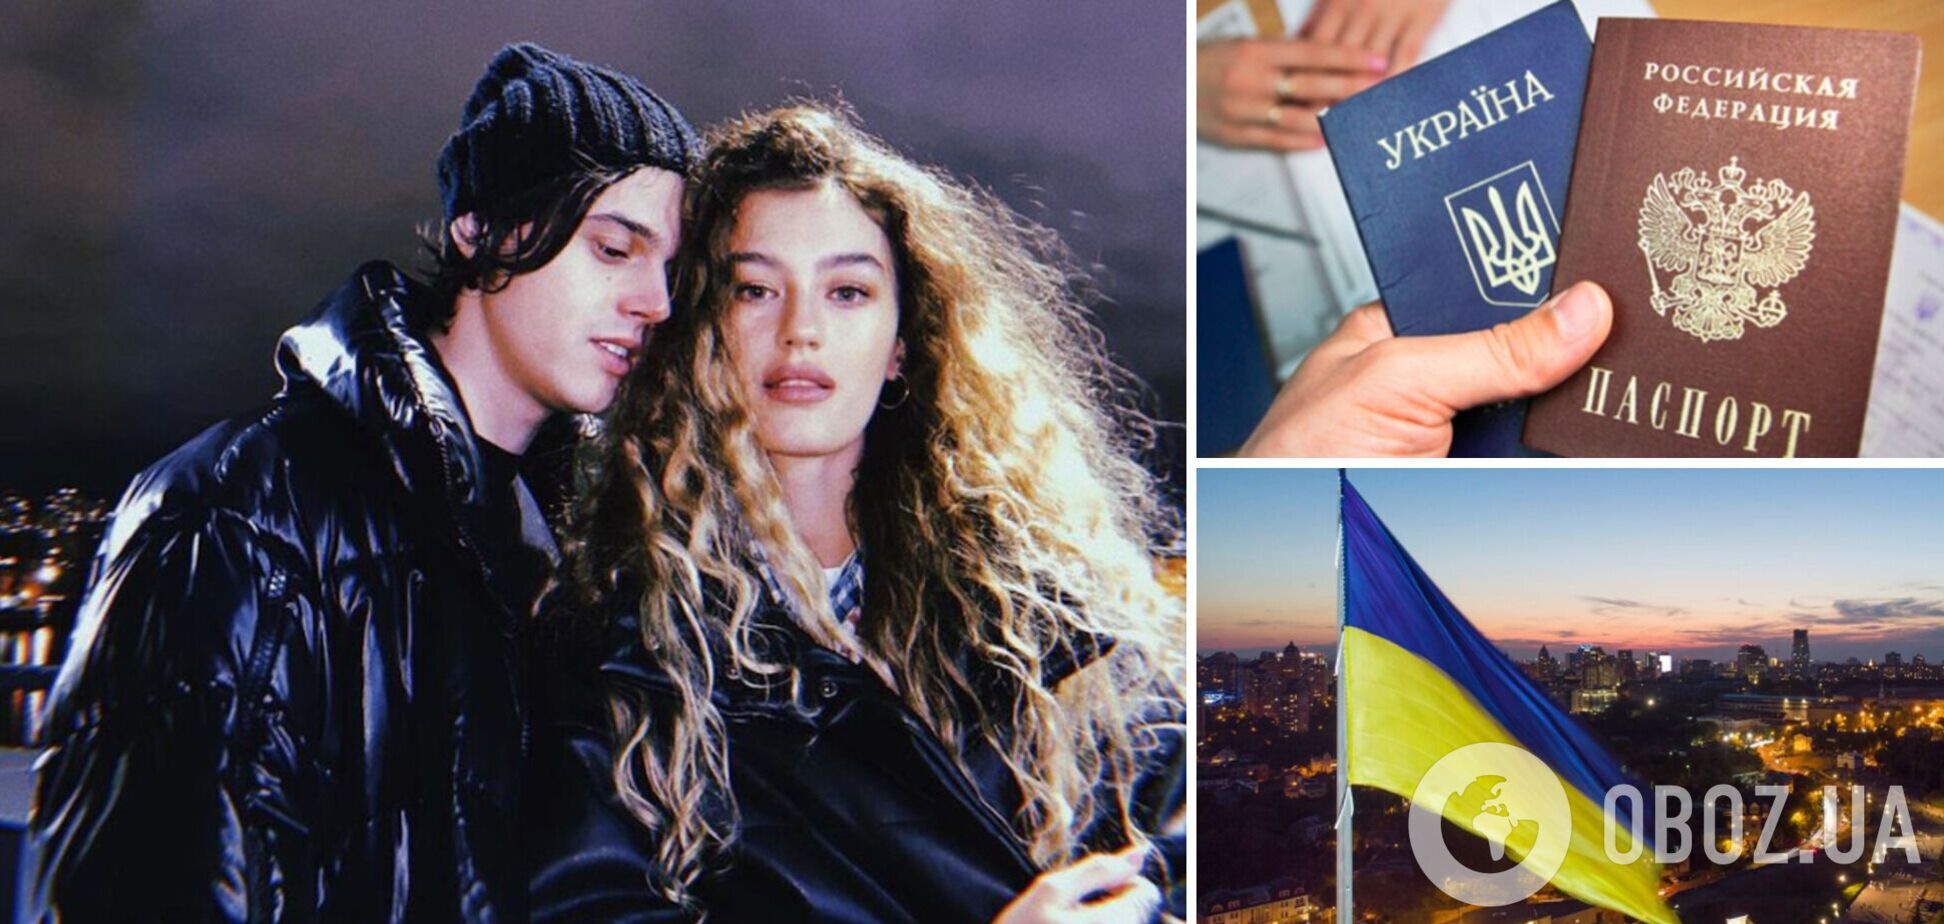 Солистка ВИА Гры и девушка ALEKSEEV хочет сменить российский паспорт на украинский